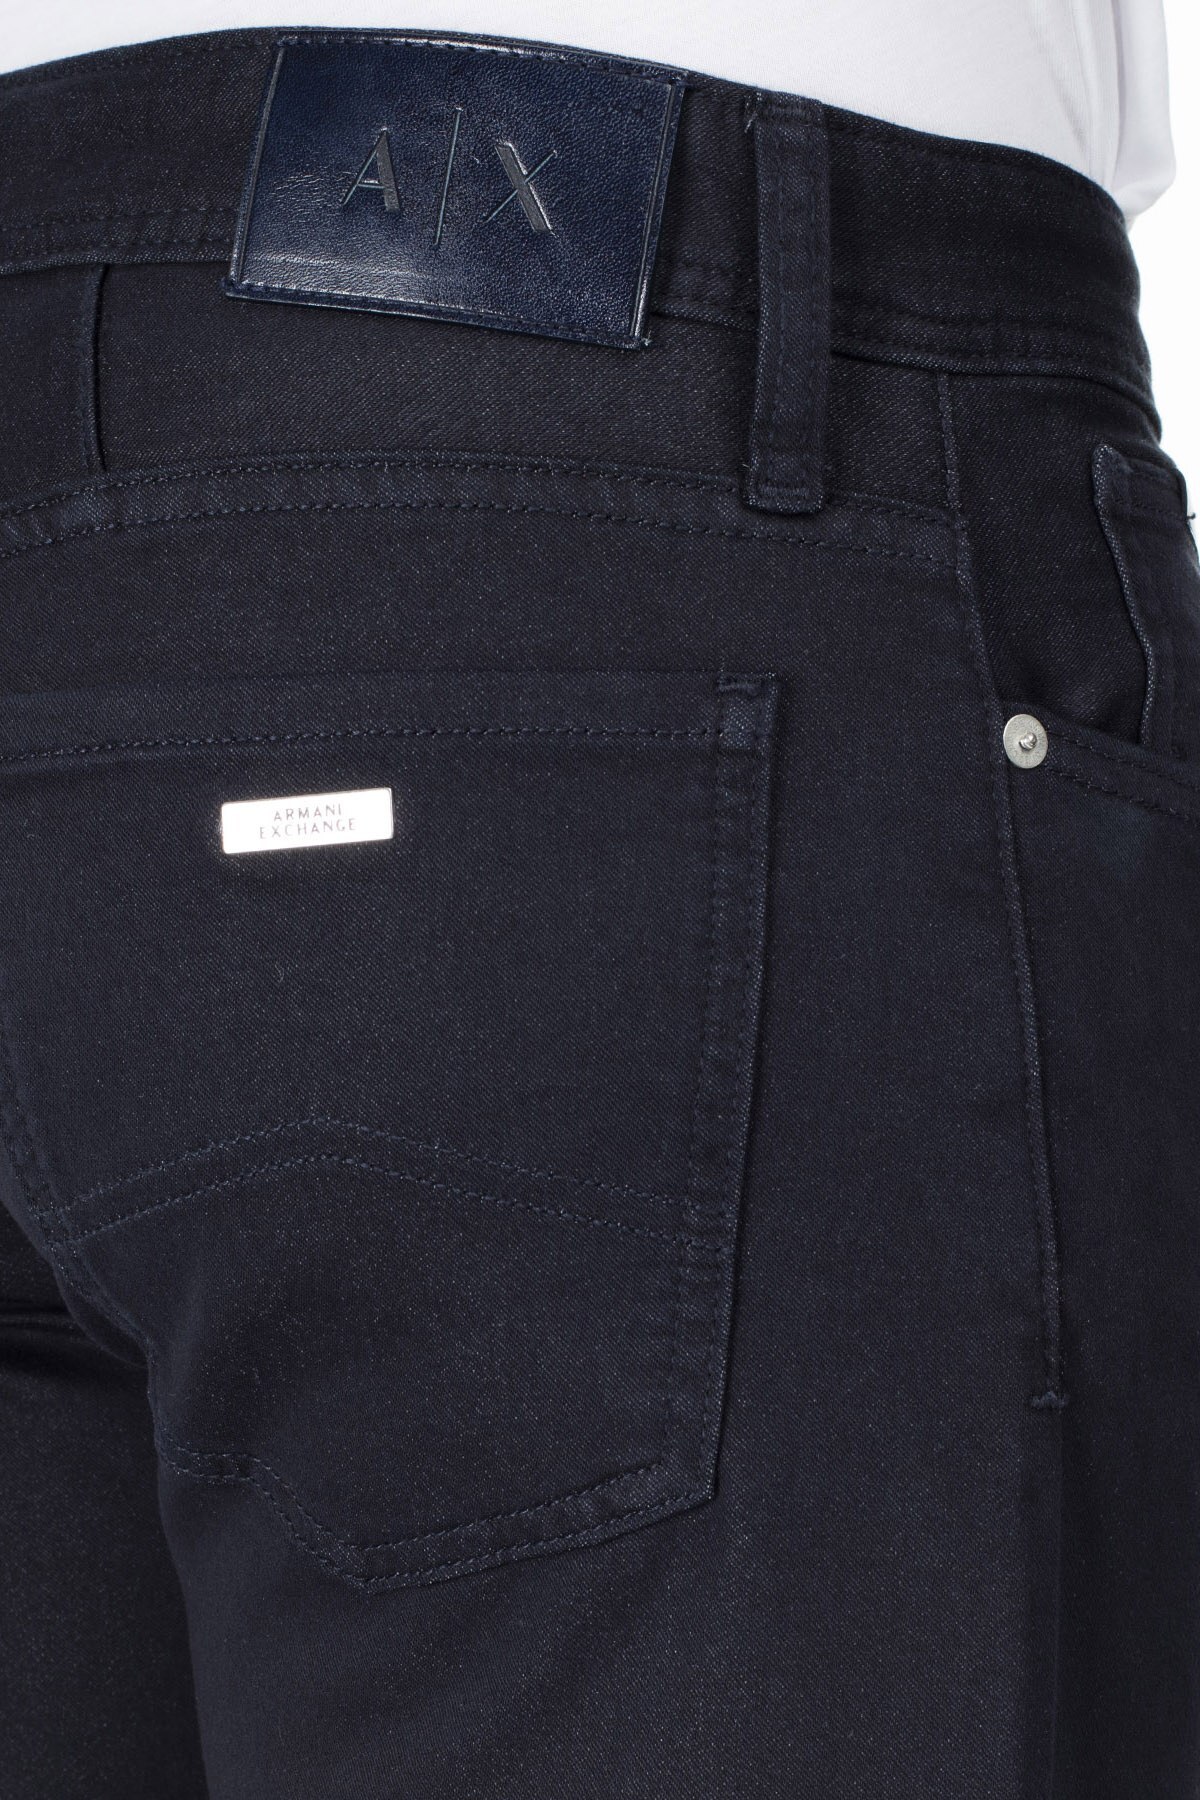 Armani Exchange J14 Jeans Erkek Kot Pantolon 3HZJ14 ZNGGZ 1510 LACİVERT